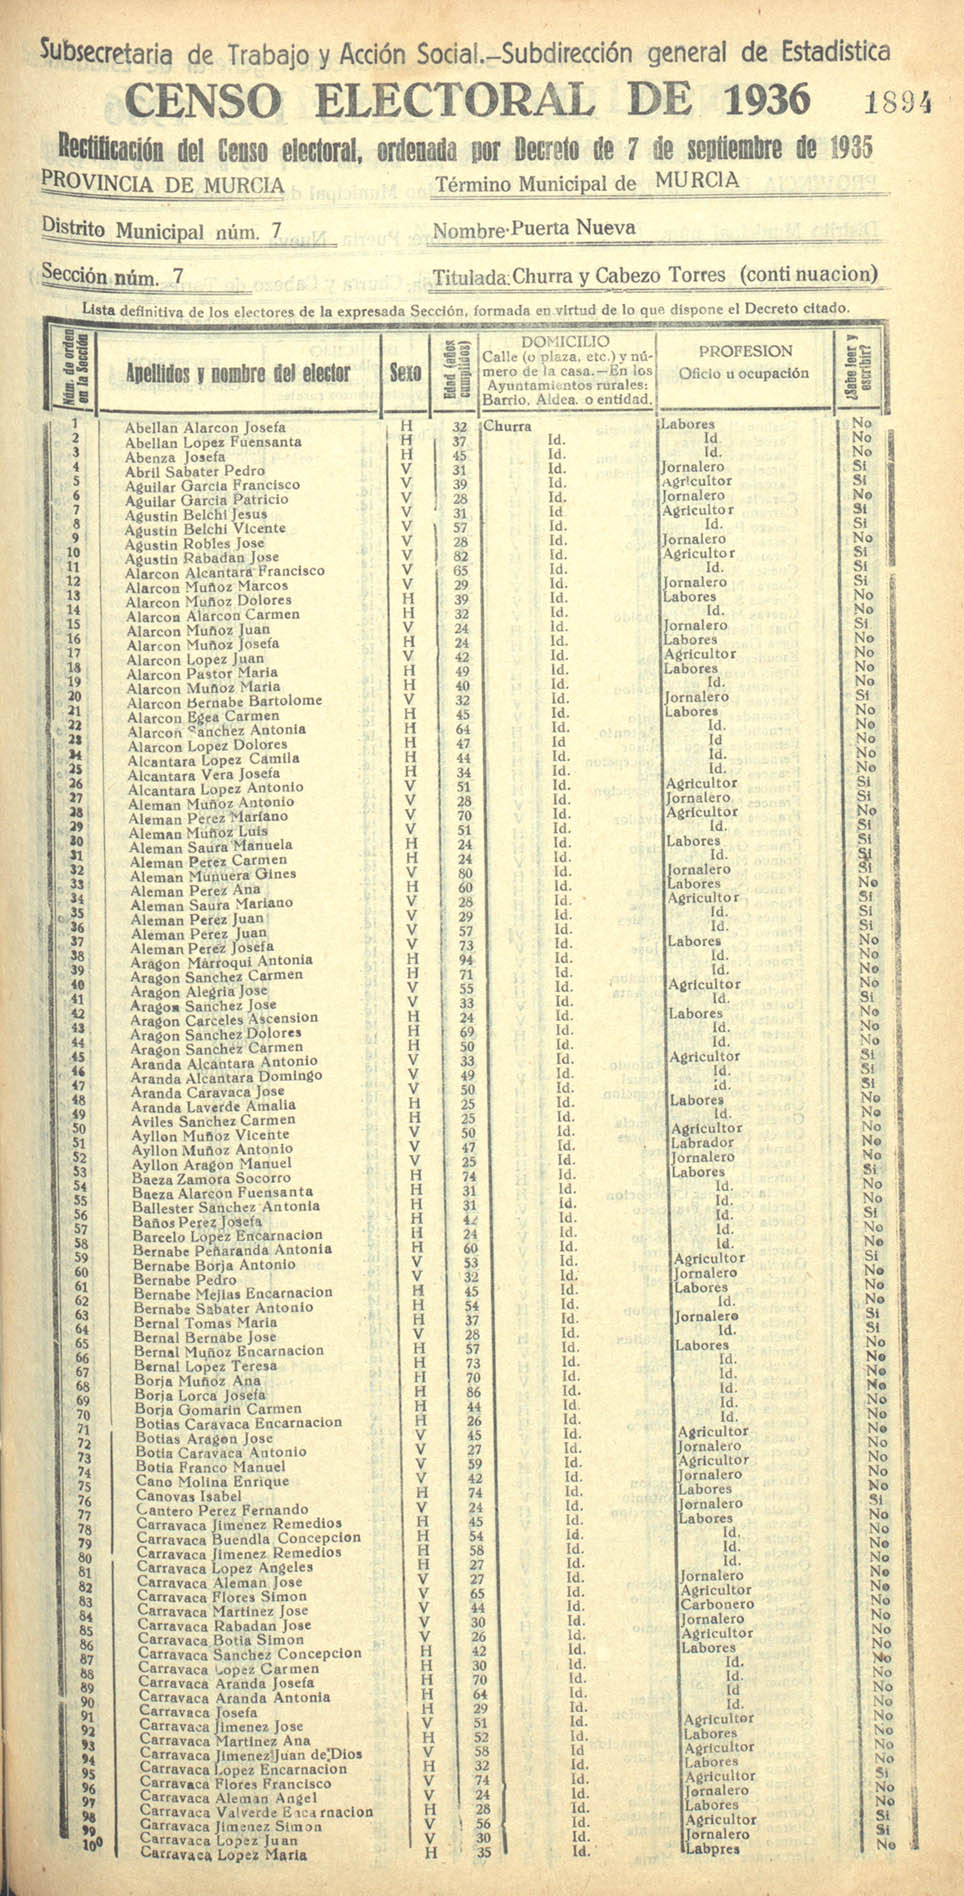 Censo electoral provincial de 1936. Murcia. Distrito 7º, Puerta Nueva. Sección 7ª, Churra y Cabezo de Torres (continuación)